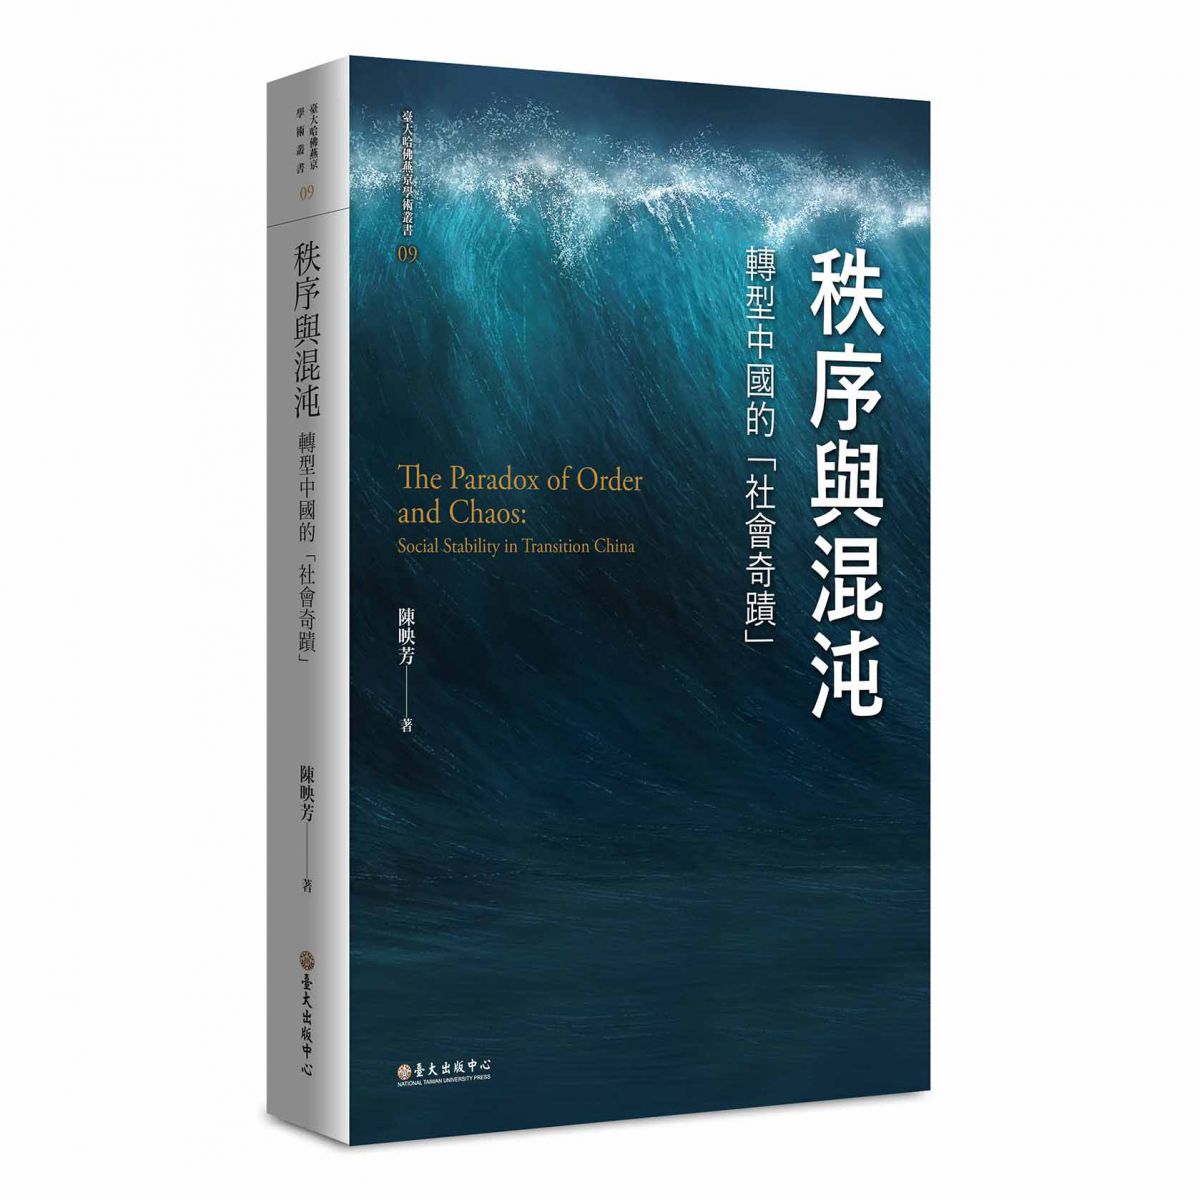 《秩序與混沌》析論70年代末以來中國社會變遷過程的「政治—社會穩定」現象